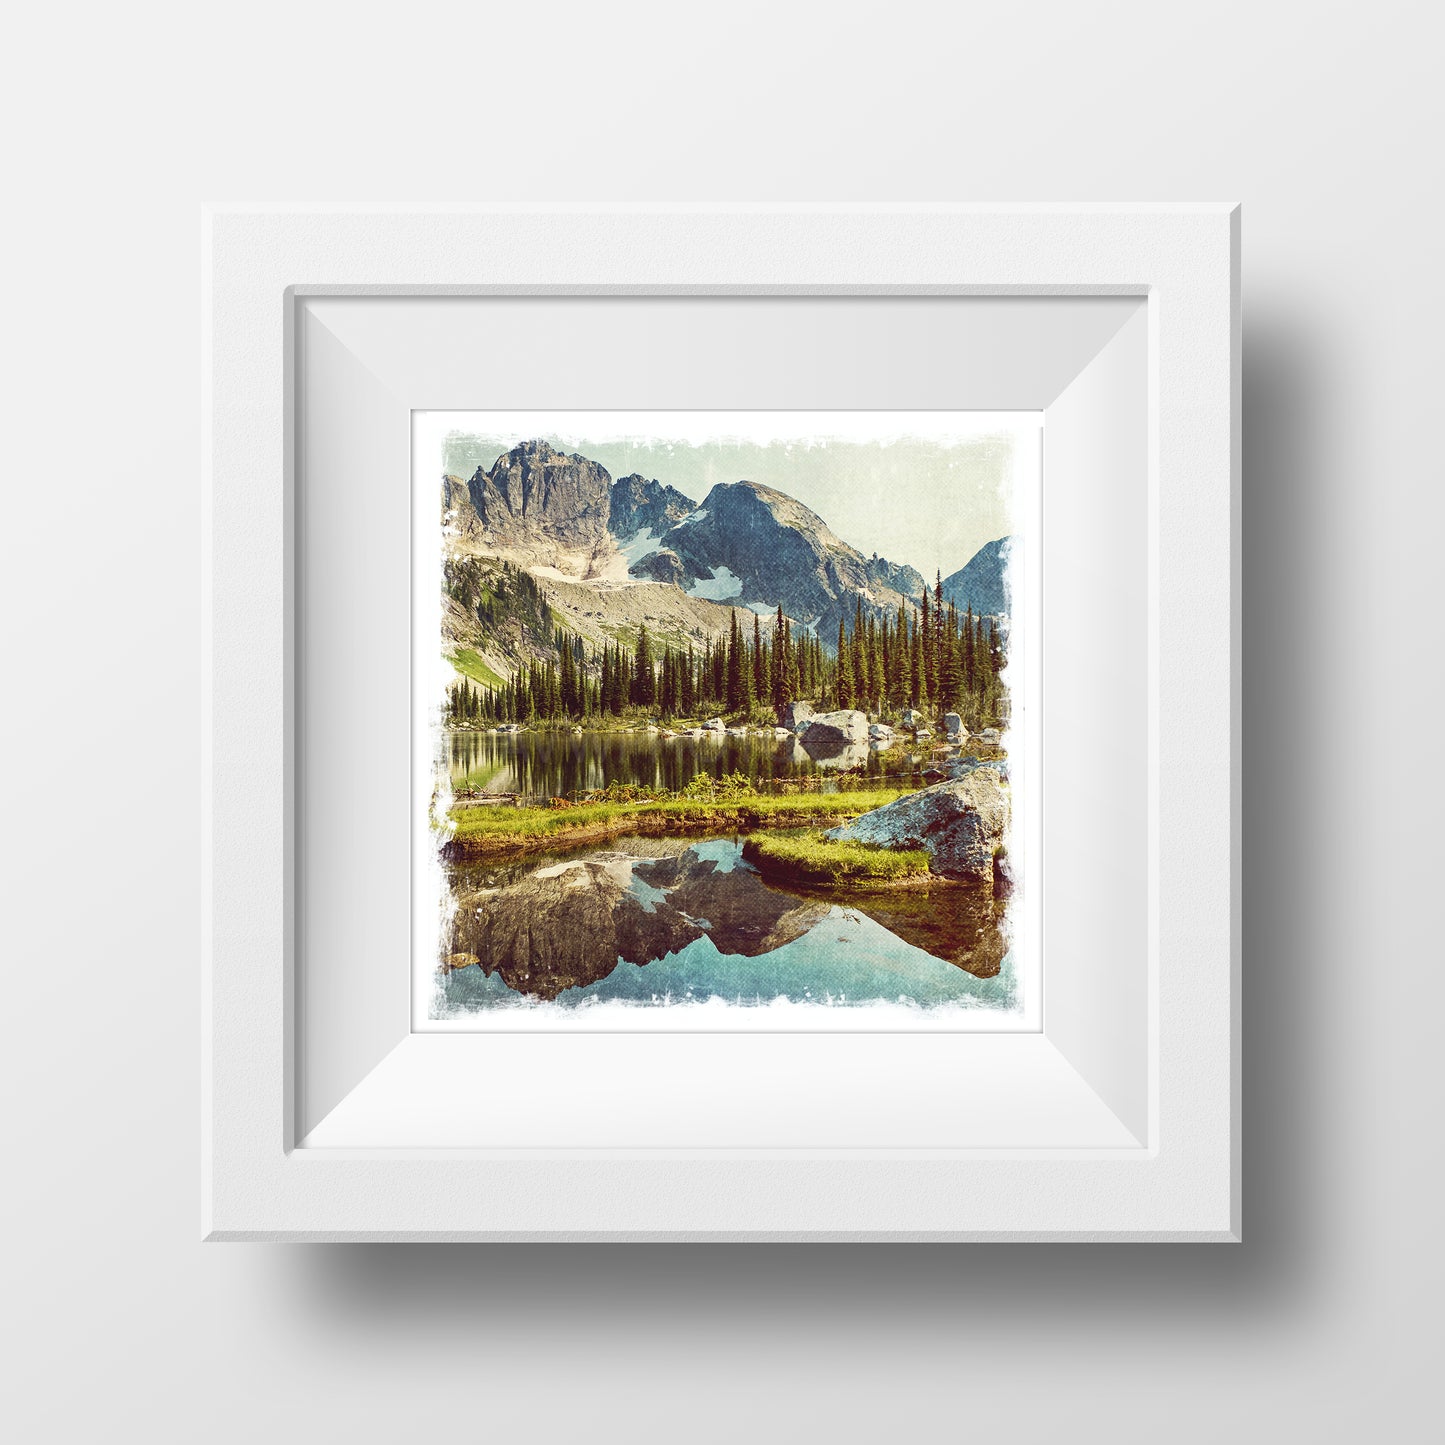 VENTA Impresión de Bellas Artes 5x5"<br> Lago Drinnon Columbia Británica<br> Acabado metálico